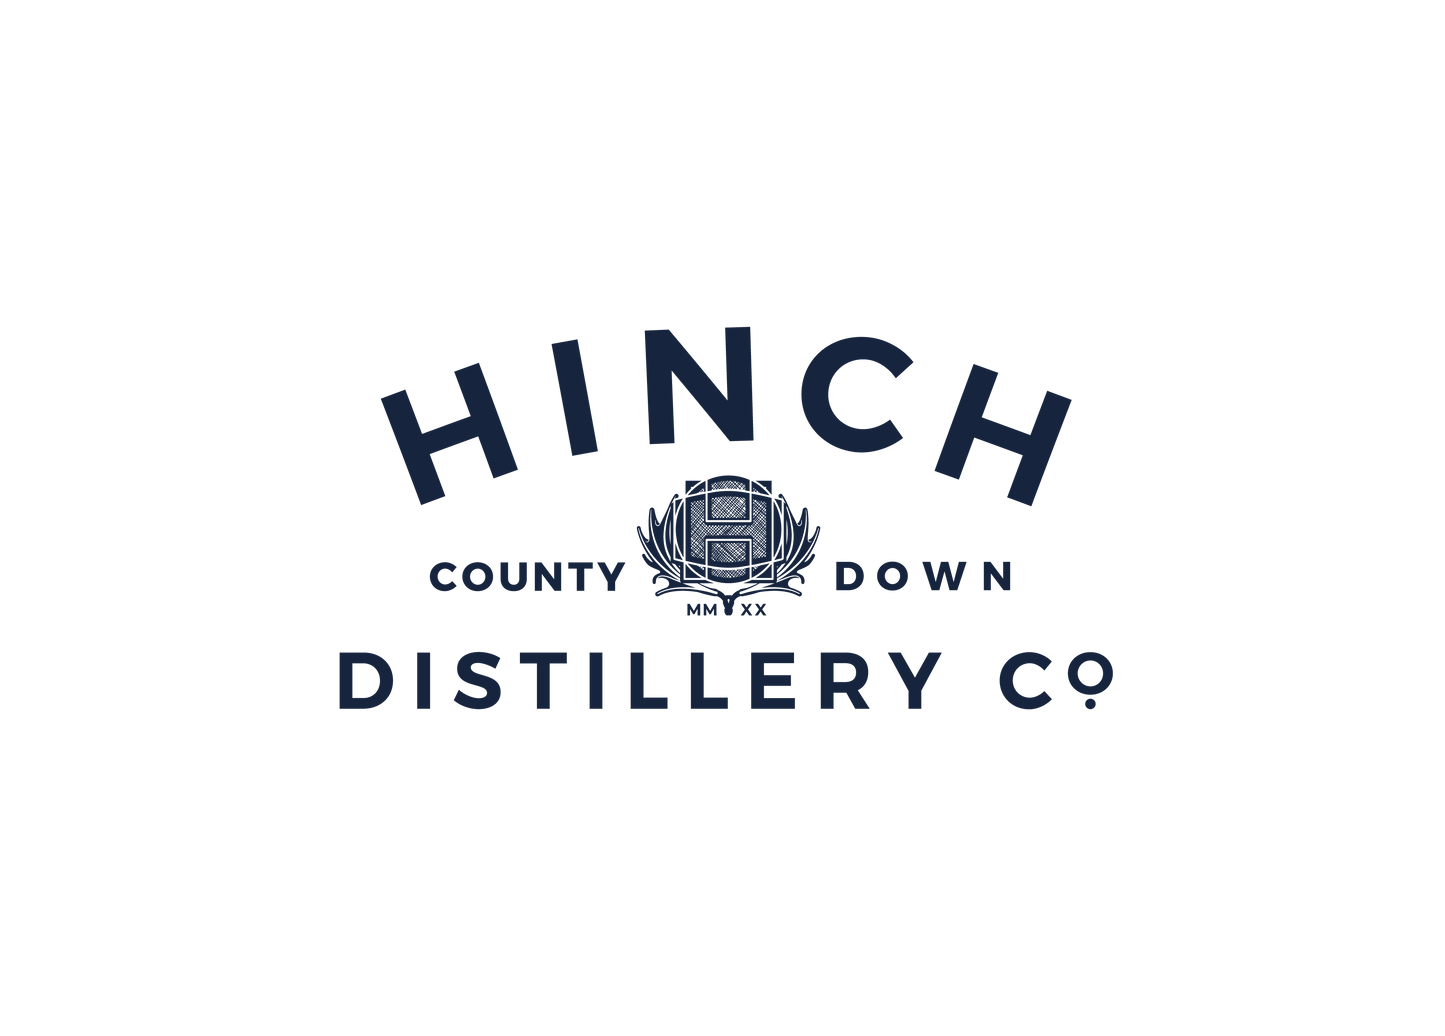 Hinch Distillery UK